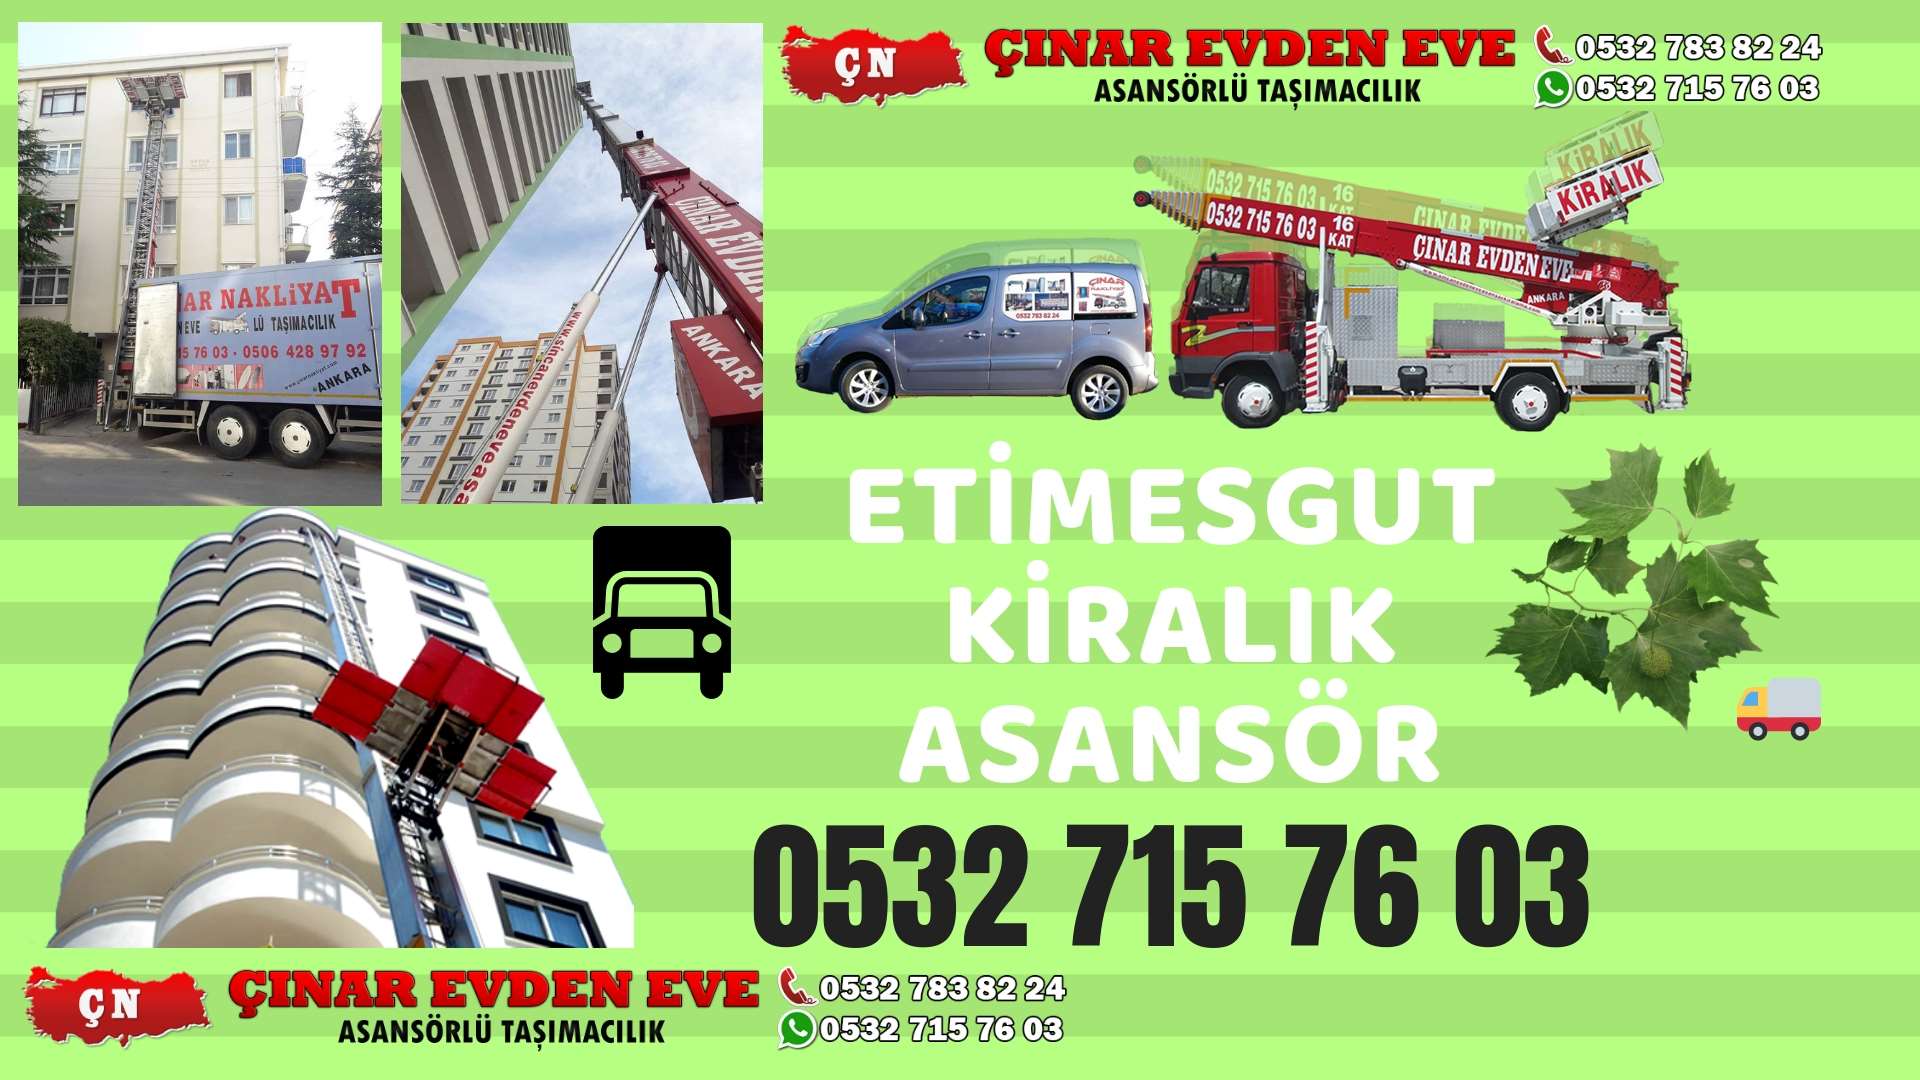 Ankara Yapracık TOKİ Ev taşıma asansörü kiralama ankara 0532 715 76 03